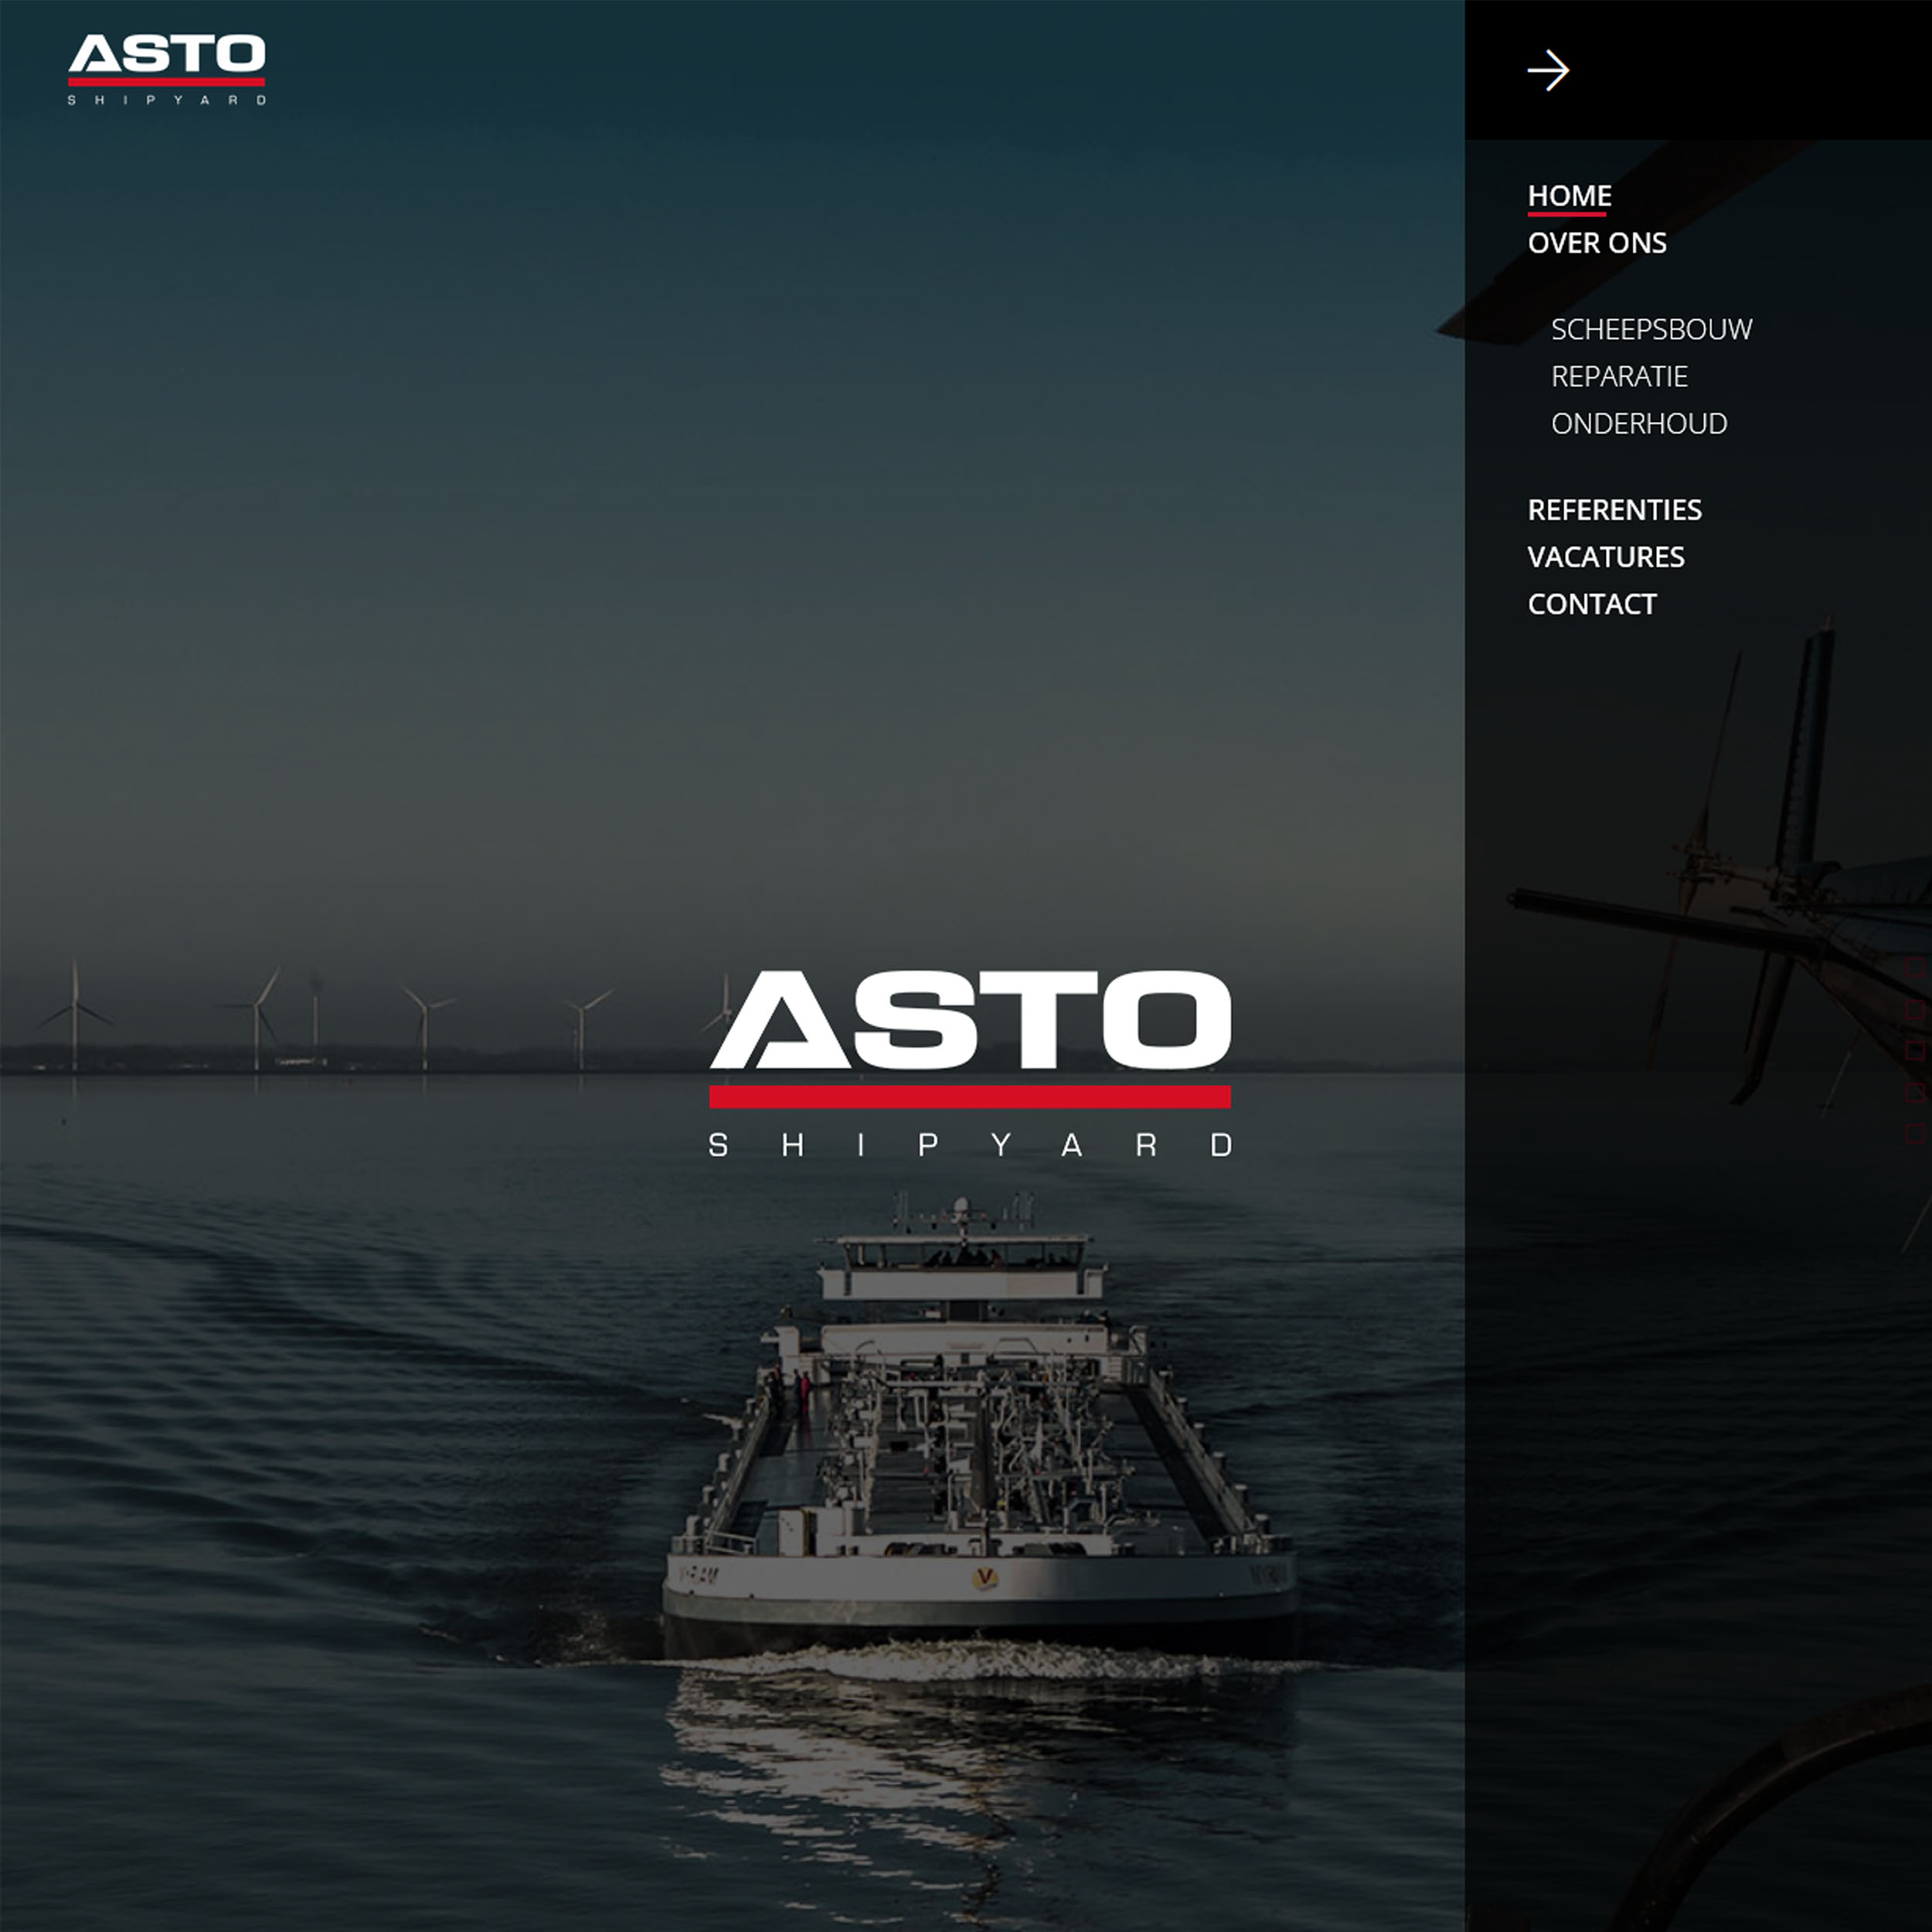 Asto Shipyard